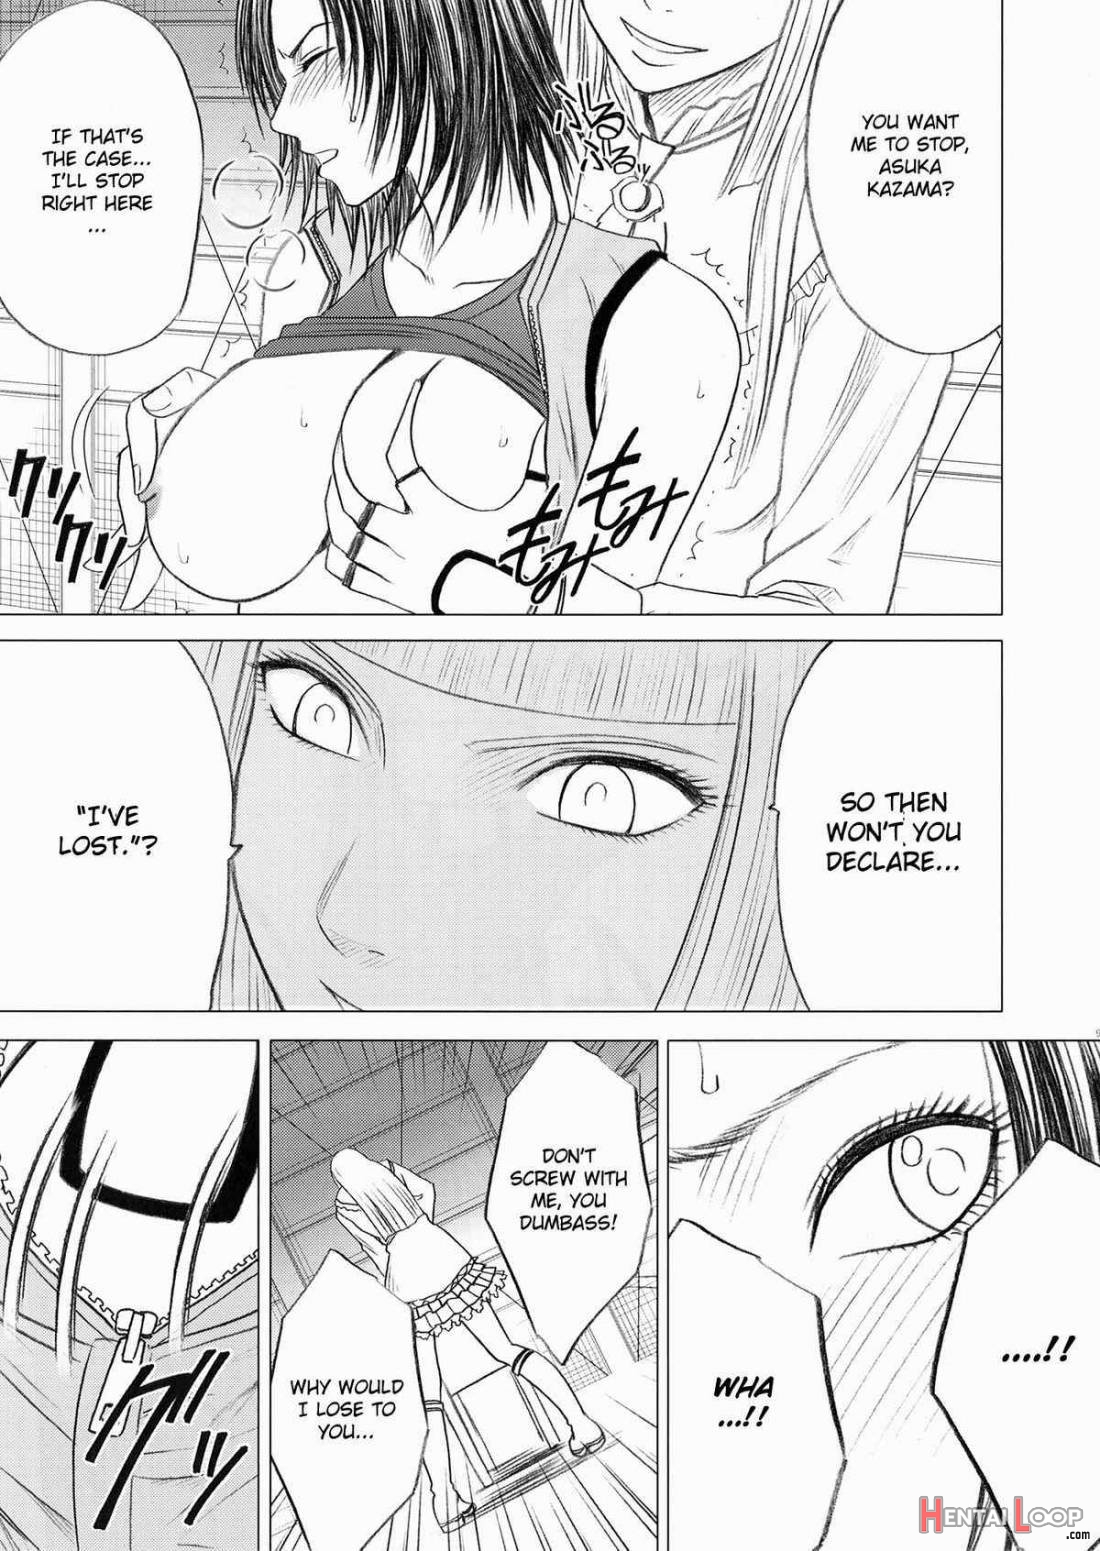 Lili x Asuka page 10